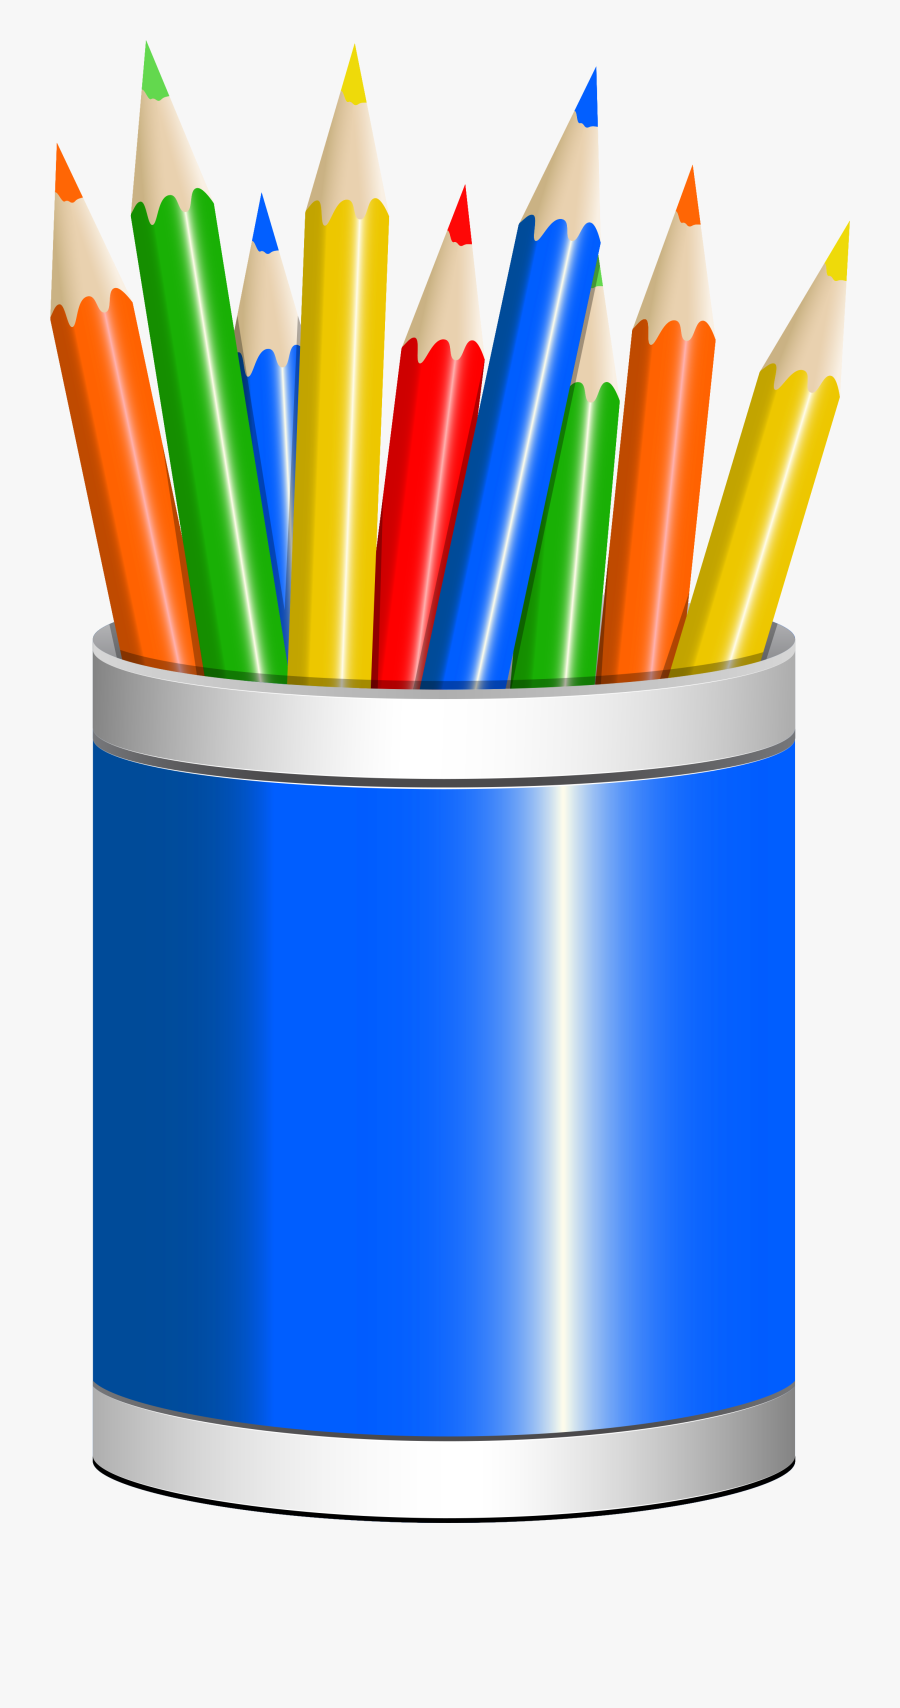 Clip Art Pencils In A Cup Clipart - Pencils In A Cup Clipart, Transparent Clipart